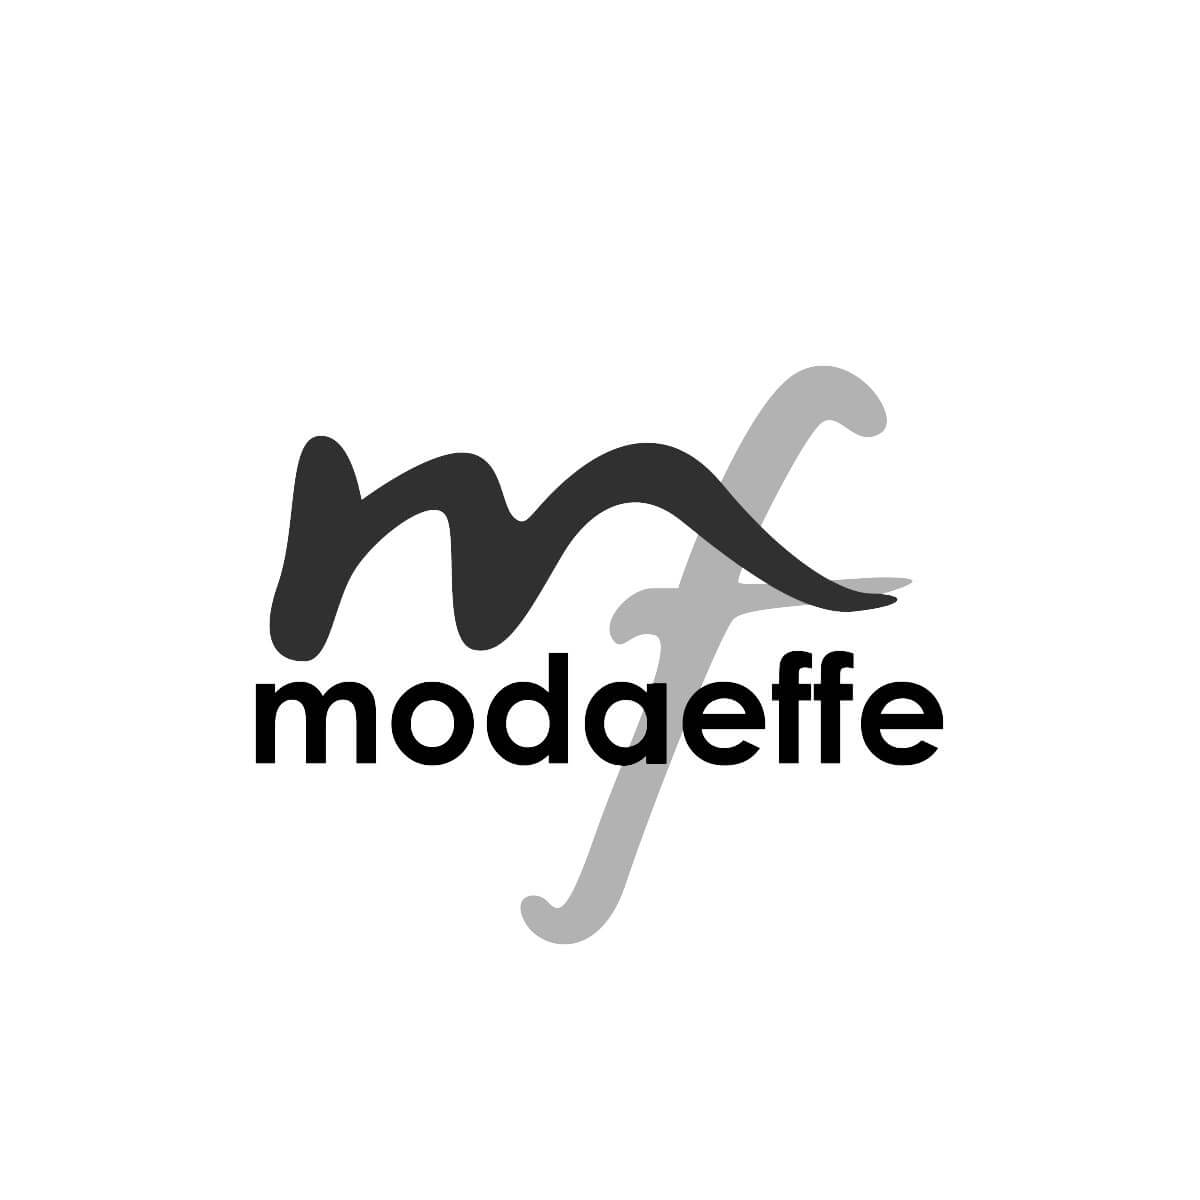 modaeffe